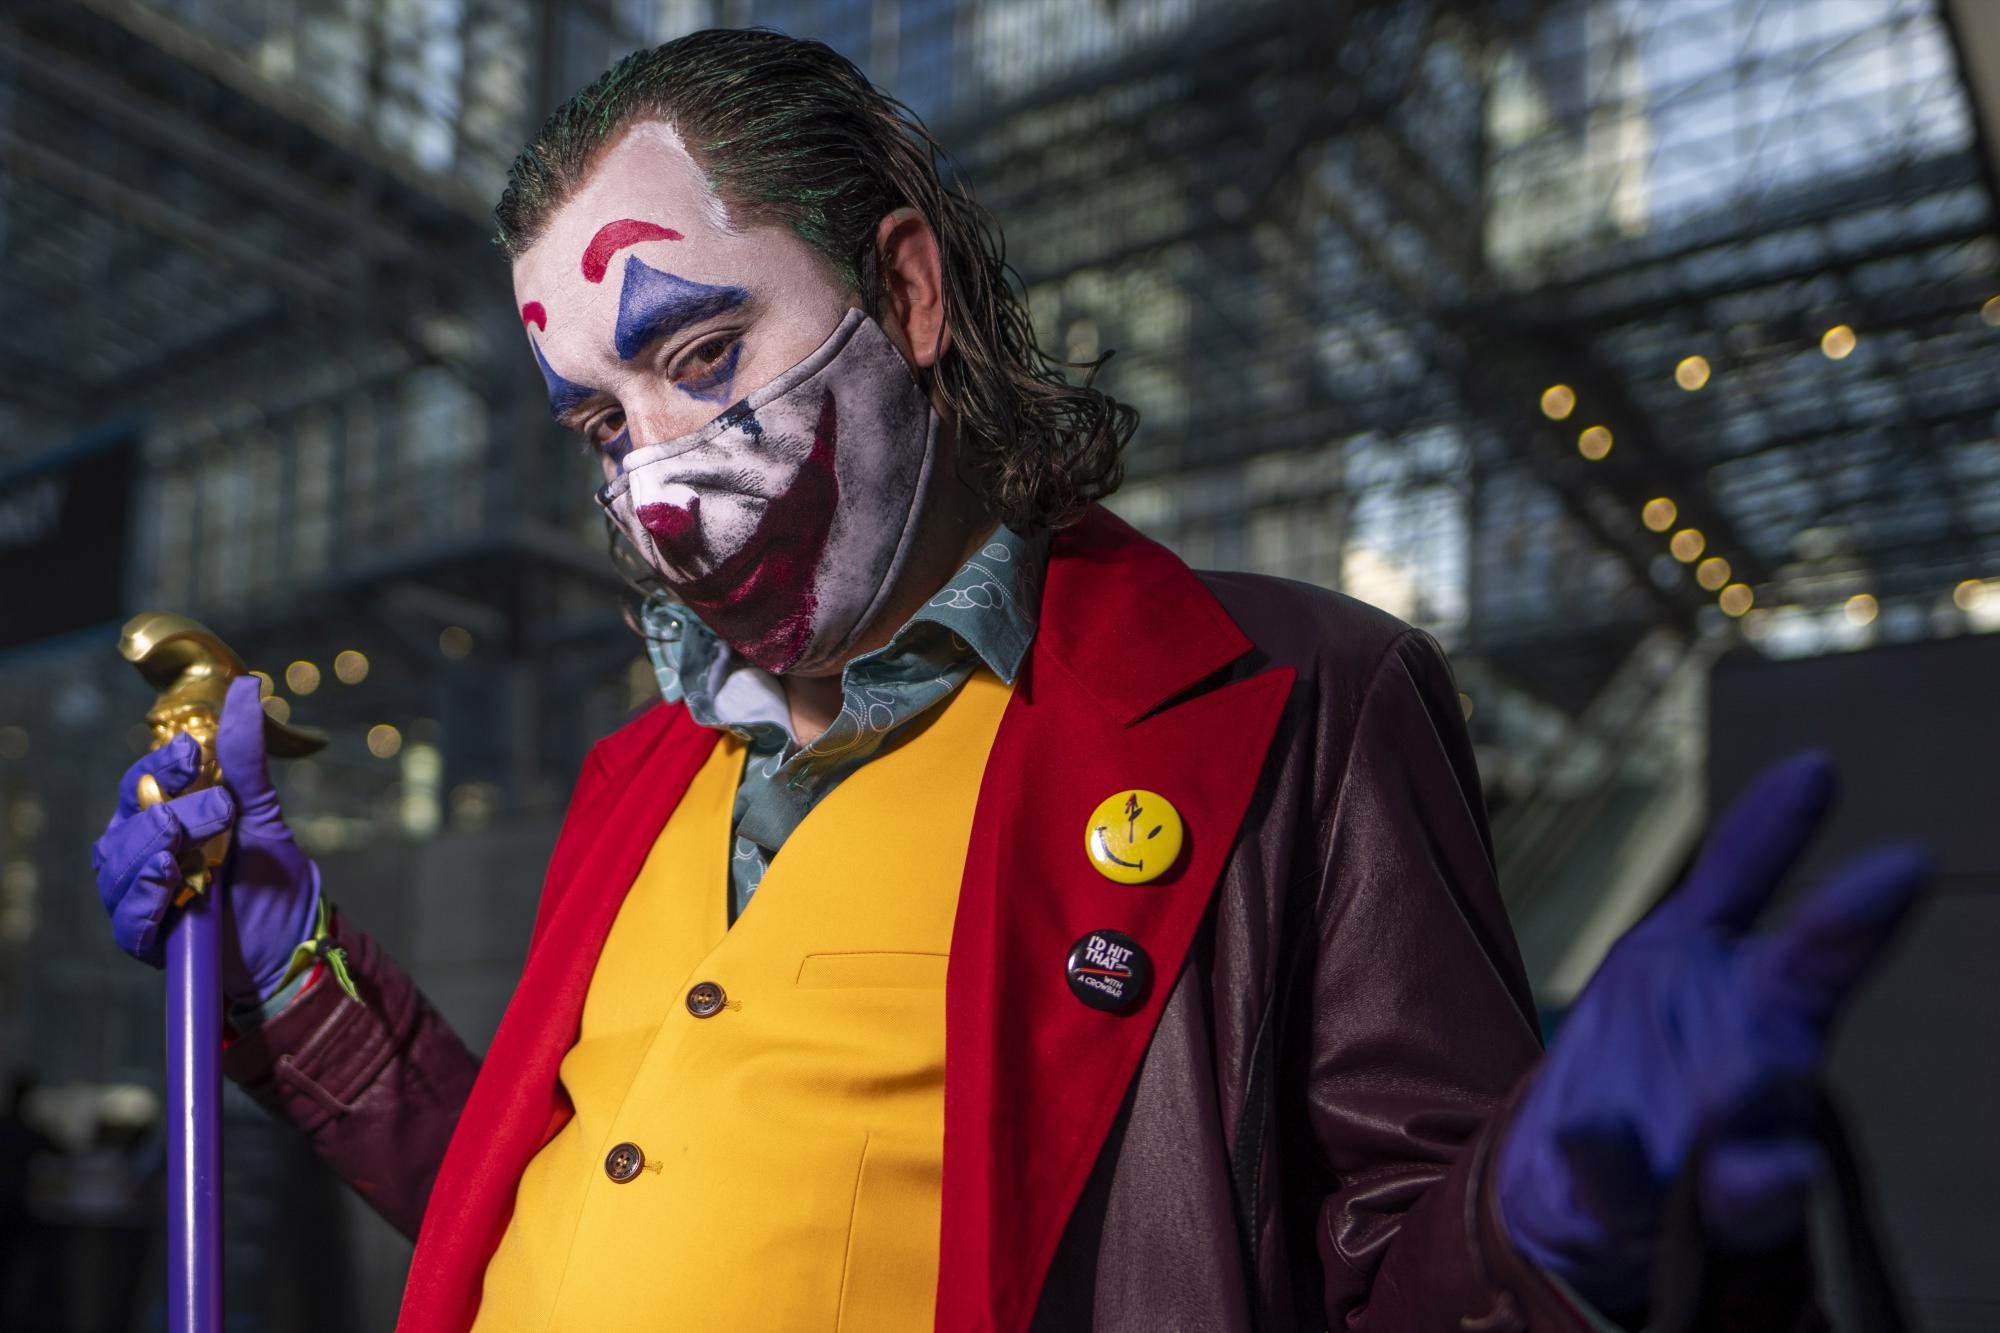 Un participante vestido como el Joker posa durante la Comic Con de Nueva York en el Centro de Convenciones Jacob K.Javits el jueves 7 de octubre de 2021 en Nueva York. (Foto de Charles Sykes / Invision / AP)